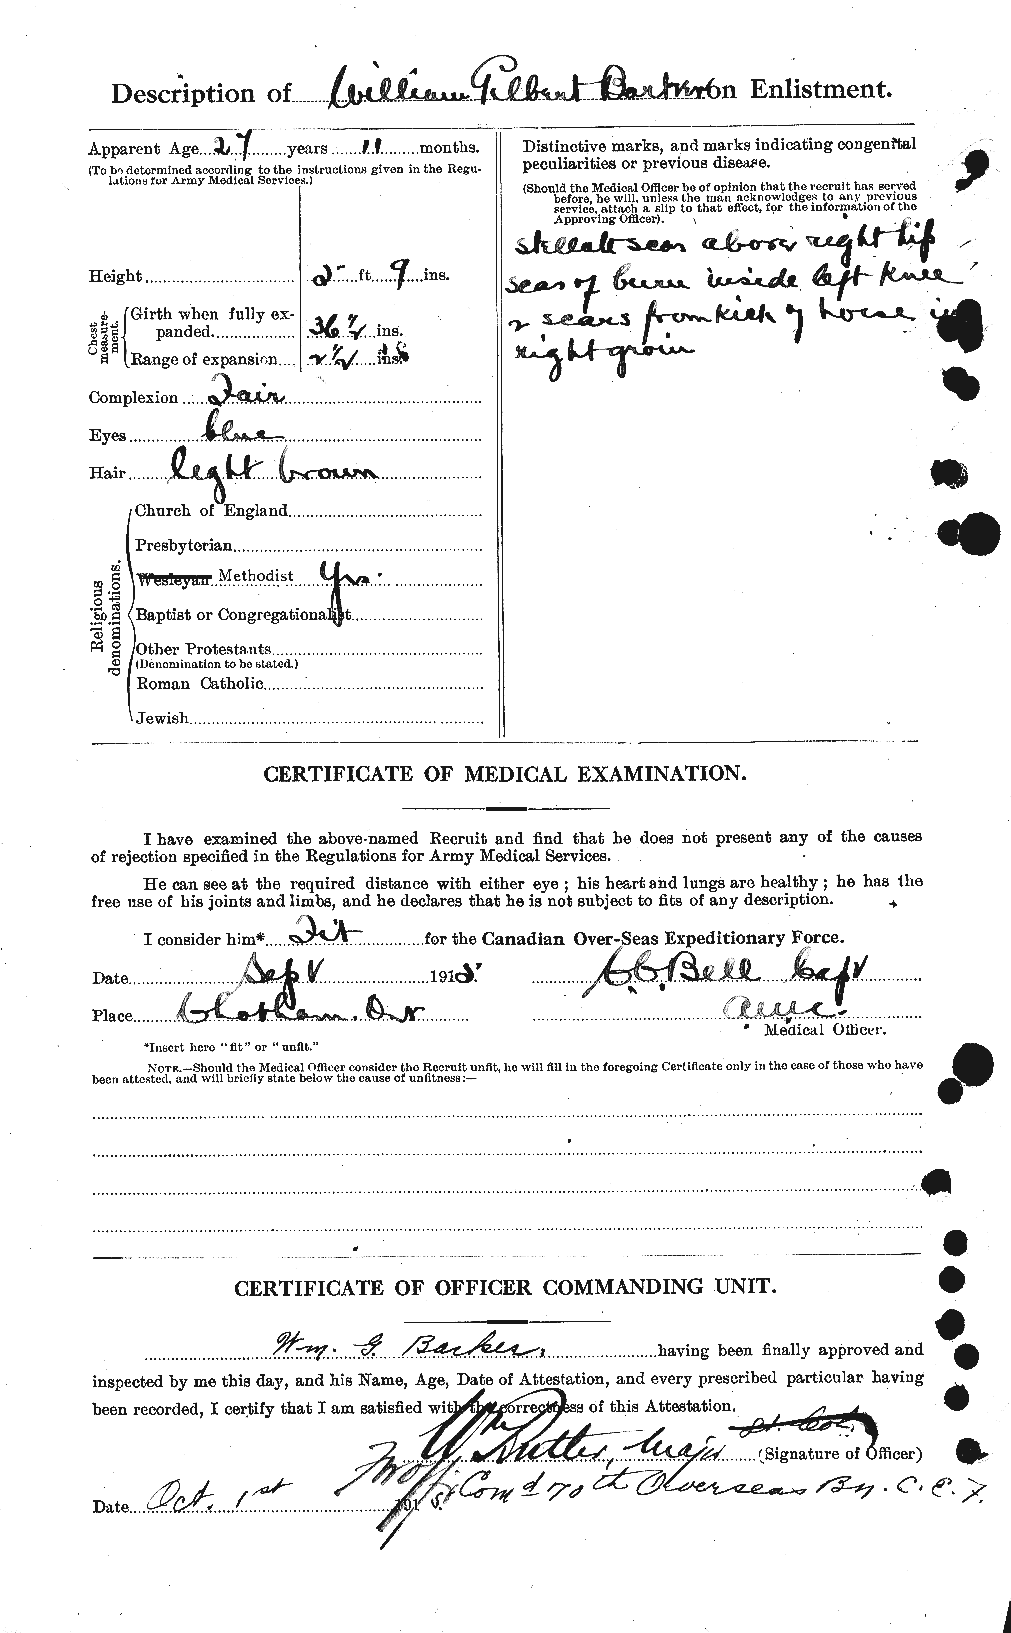 Dossiers du Personnel de la Première Guerre mondiale - CEC 226899b